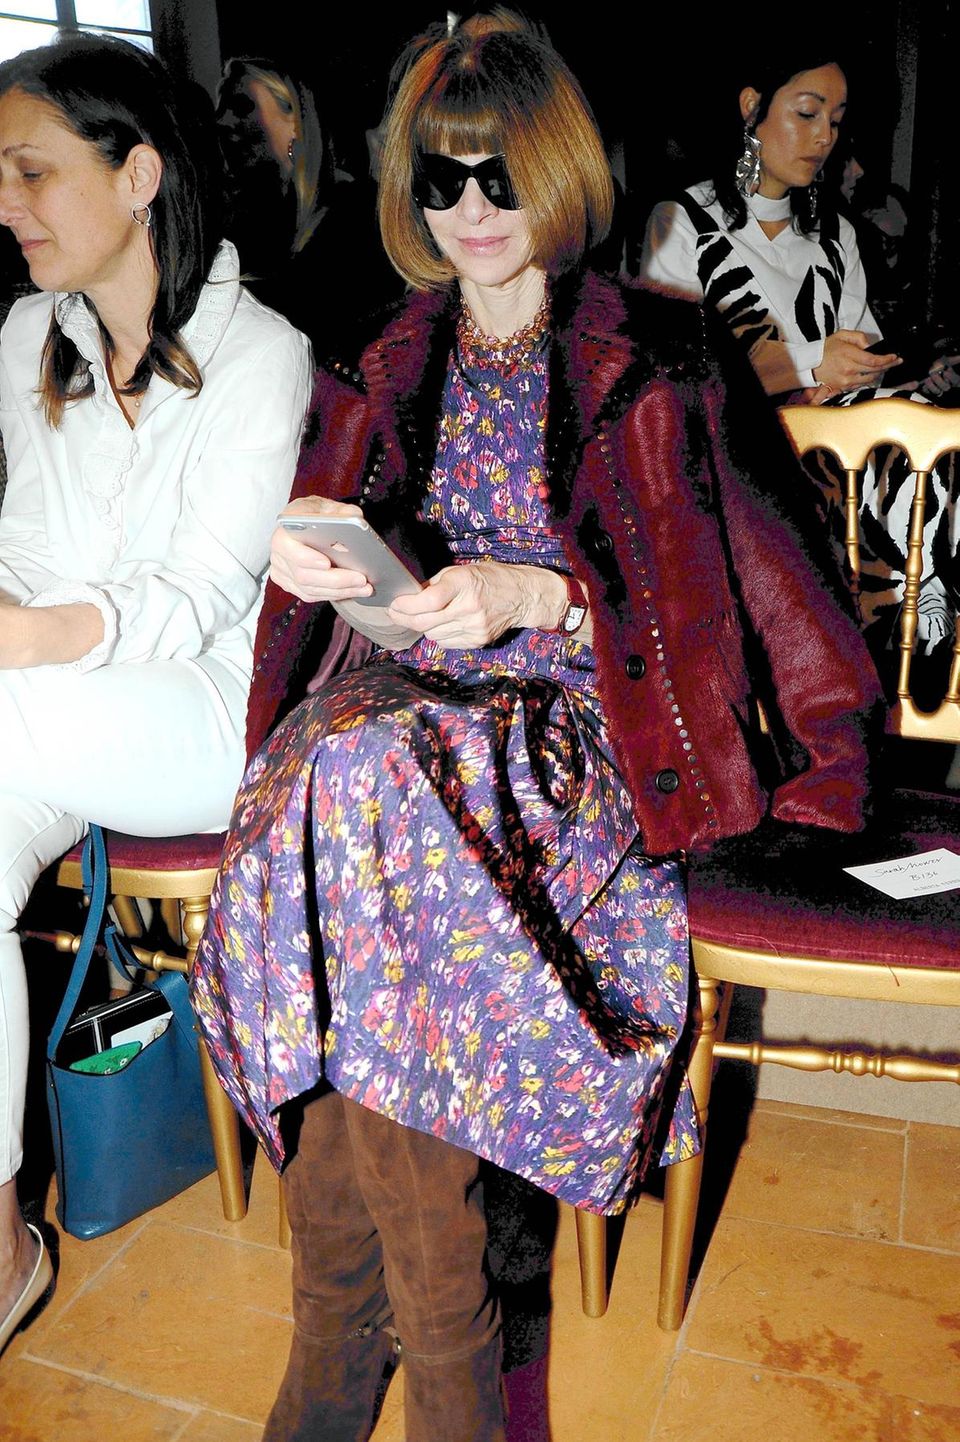 Vor allem während der Fashionweek ist Vogue-Chefin Anna Wintour extrem beschäftigt. Während der Schau richtet sie ihren Blick jedoch auf den Laufsteg, anstatt weiterhin Mails auf ihrem Smartphone zu checken.